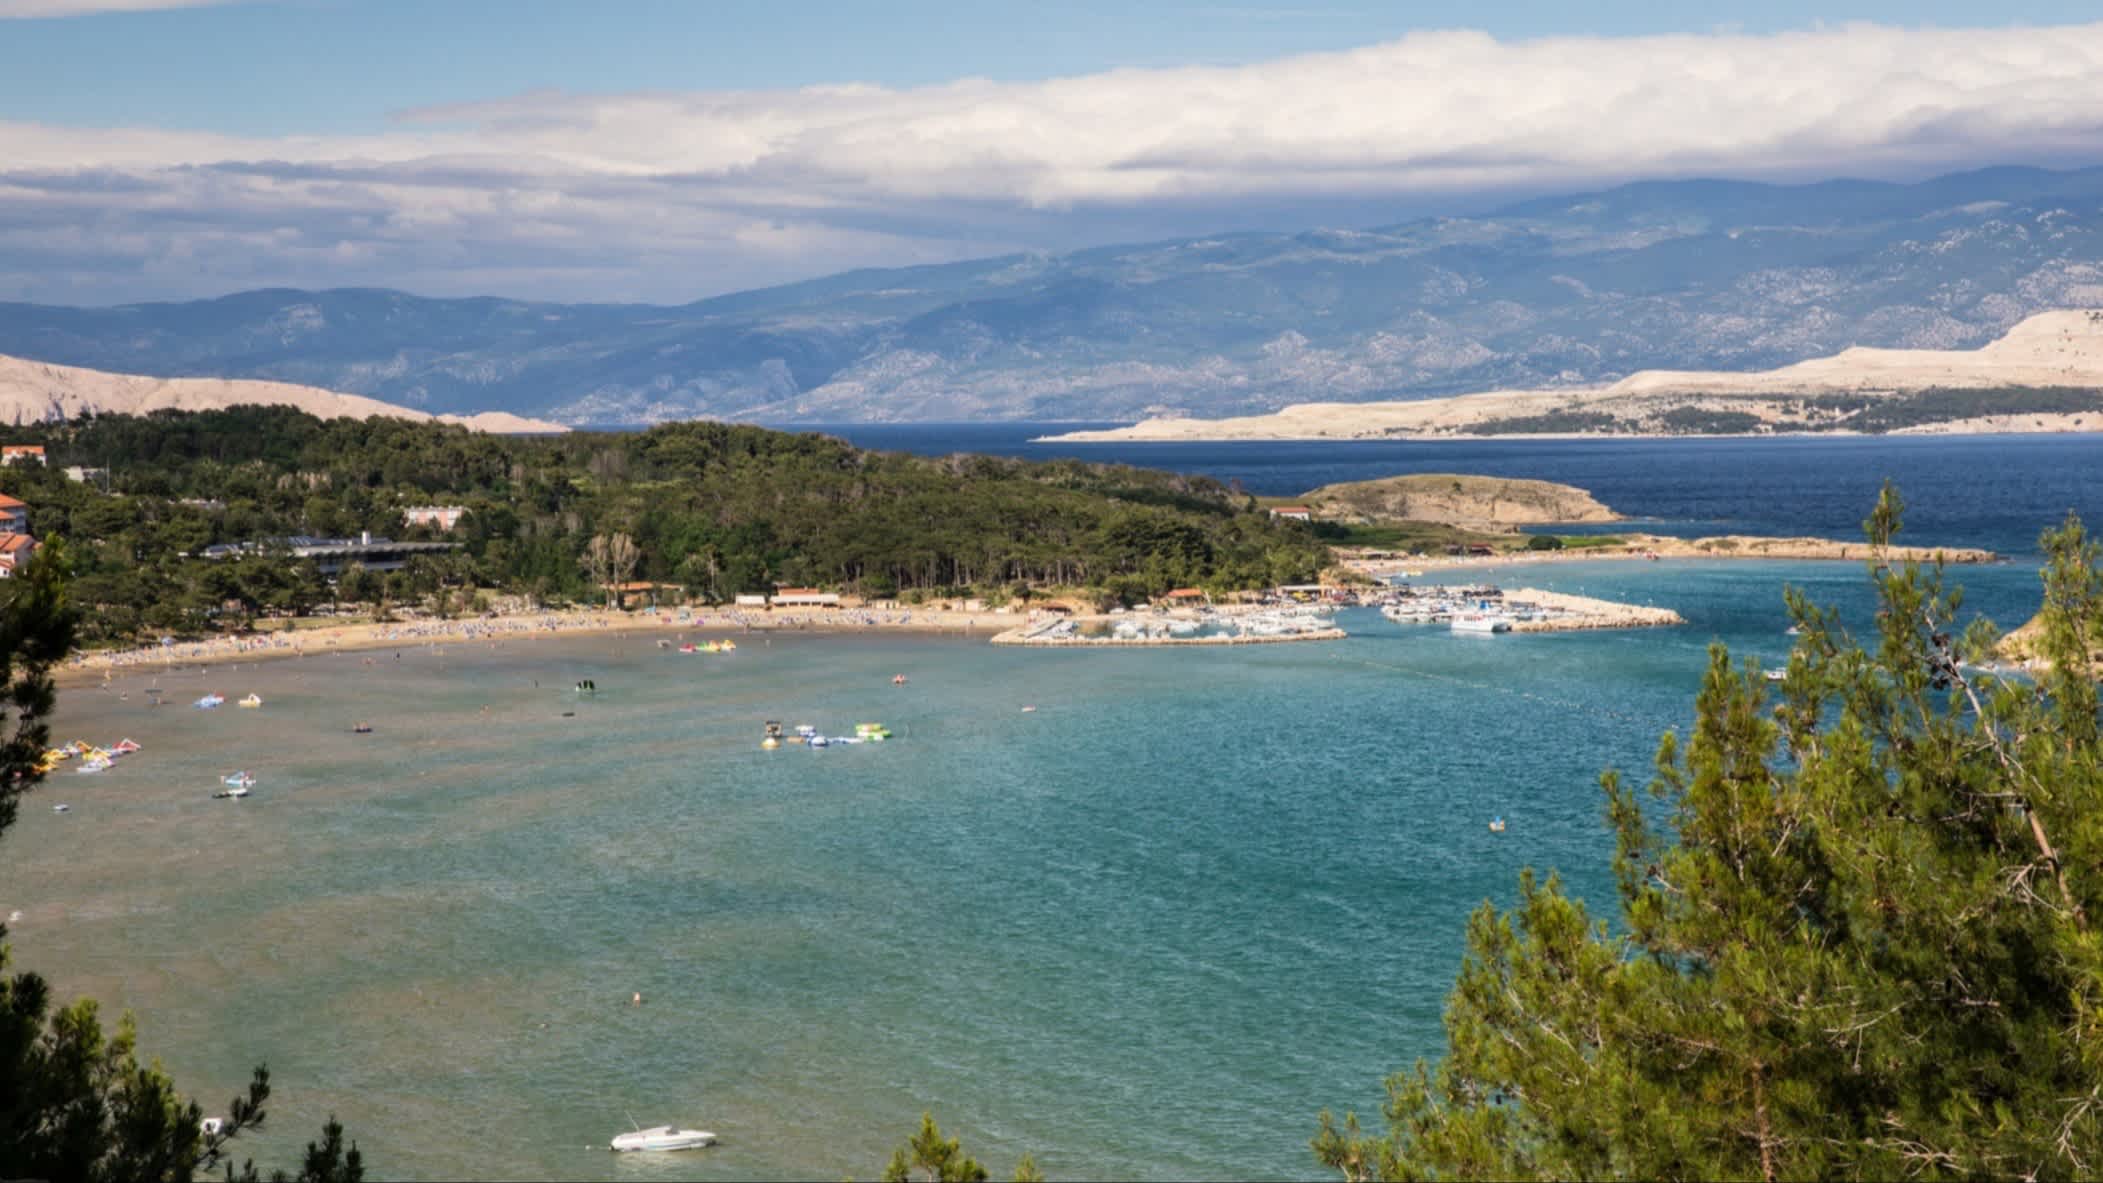 Strand von Lopar, Insel Rab, Kroatien mit Blick auf das blaue Meer und die Bucht von einem Viewpoint aus.